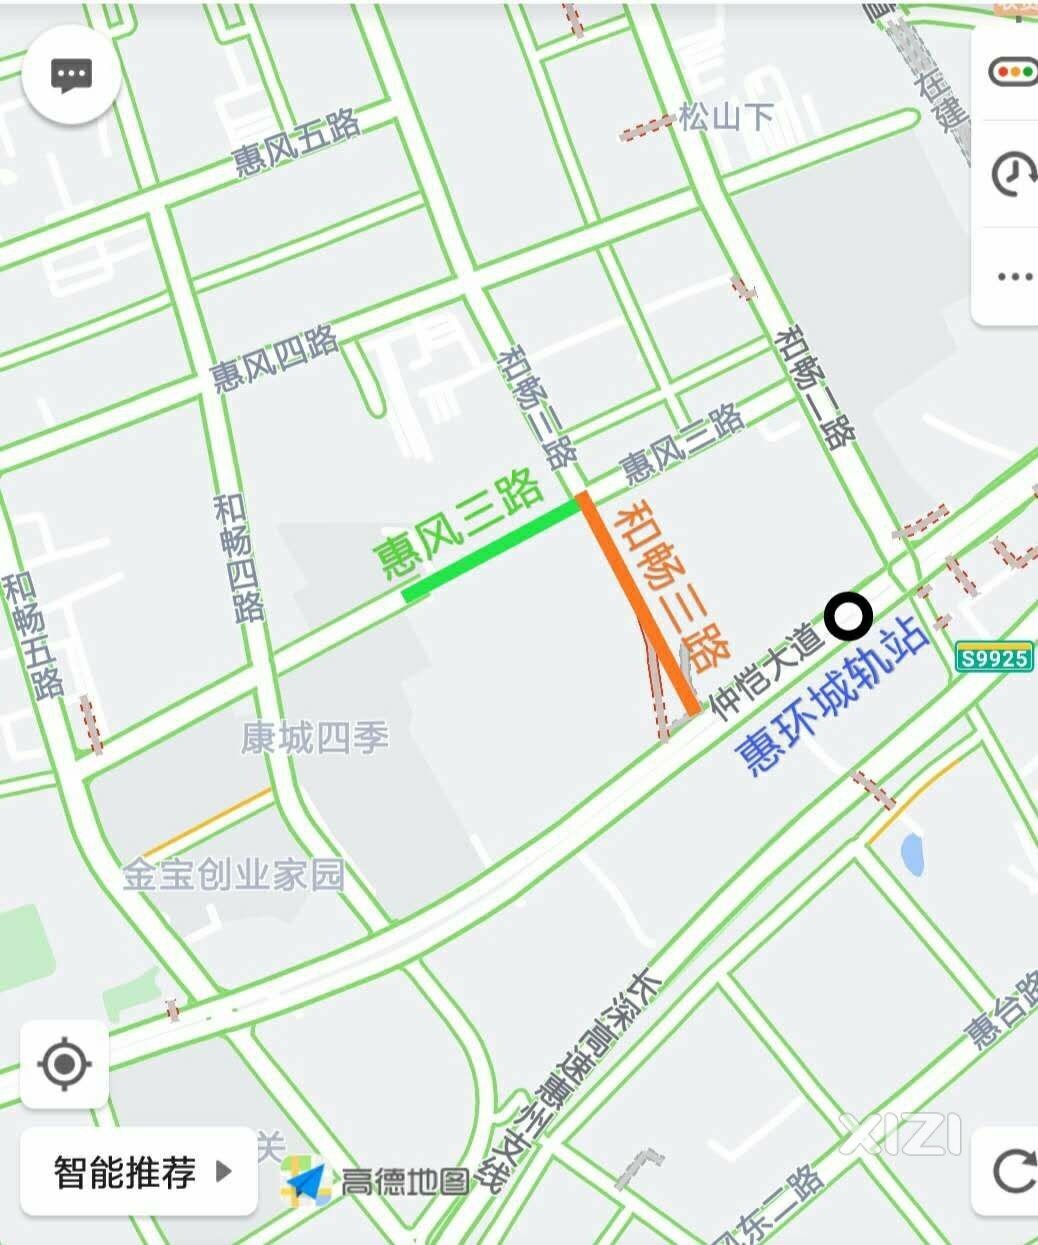 惠风三路、和畅三路 预计全线通车时间2023/12/30